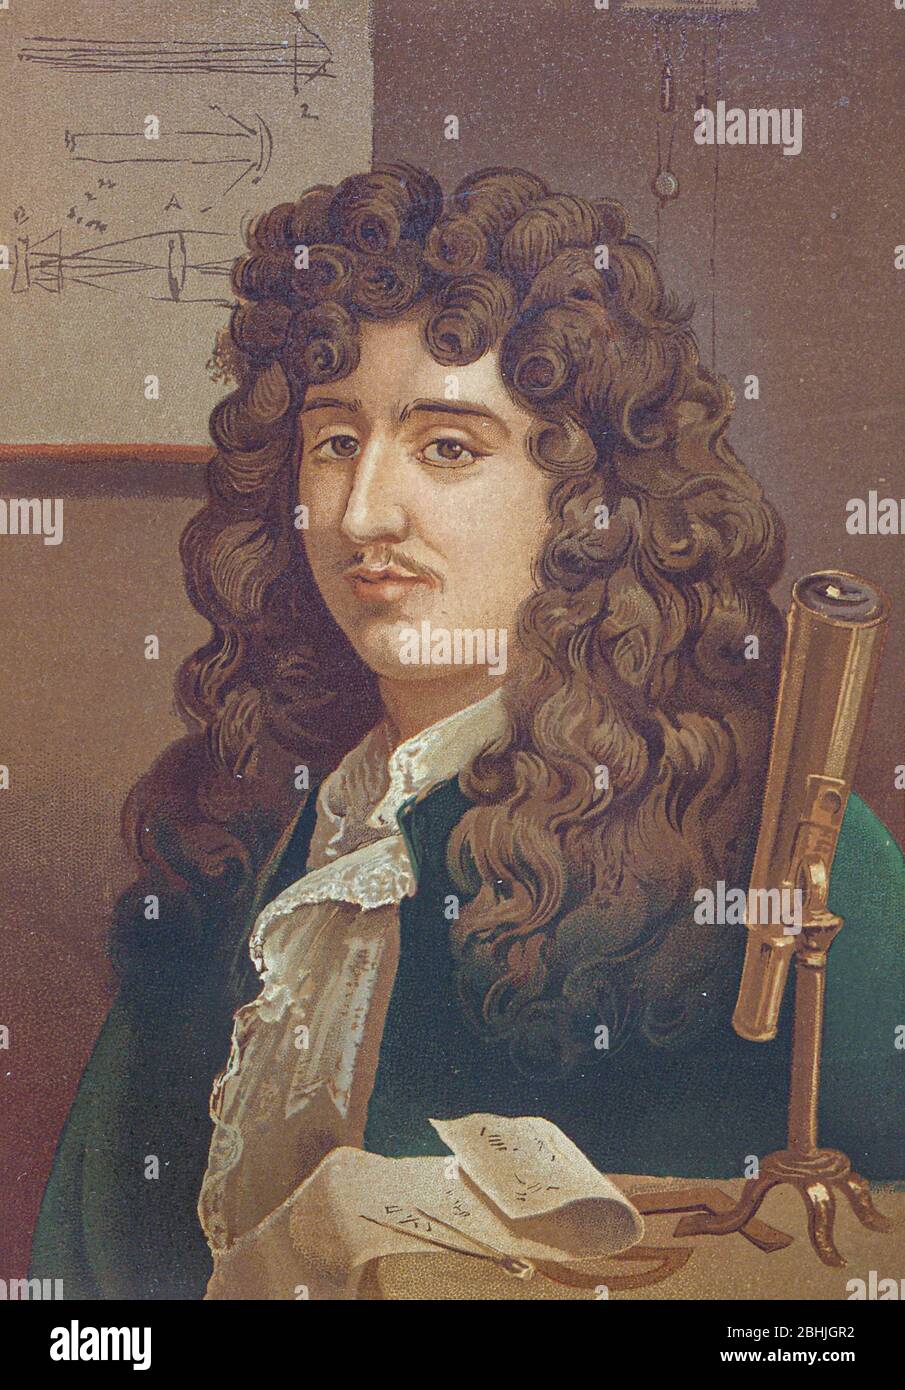 Christiaan Huygens [Cristian Huygens] auch Hugenius oder Huyghens; (14. April 1629 – 8. Juli 1695), war ein niederländischer Physiker, Mathematiker, Astronom und Erfinder, der weithin als einer der größten Wissenschaftler aller Zeiten und eine wichtige Figur in der wissenschaftlichen Revolution angesehen wird. In der Physik, Huygens machte bahnbrechende Beiträge in Optik und Mechanik, während als Astronom ist er vor allem bekannt für seine Studien über die Ringe des Saturn und die Entdeckung seines Mondes Titan. Als Erfinder verbesserte er das Design des Teleskops mit der Erfindung des Huygenschen Okular. Seine berühmteste inVenti Stockfoto